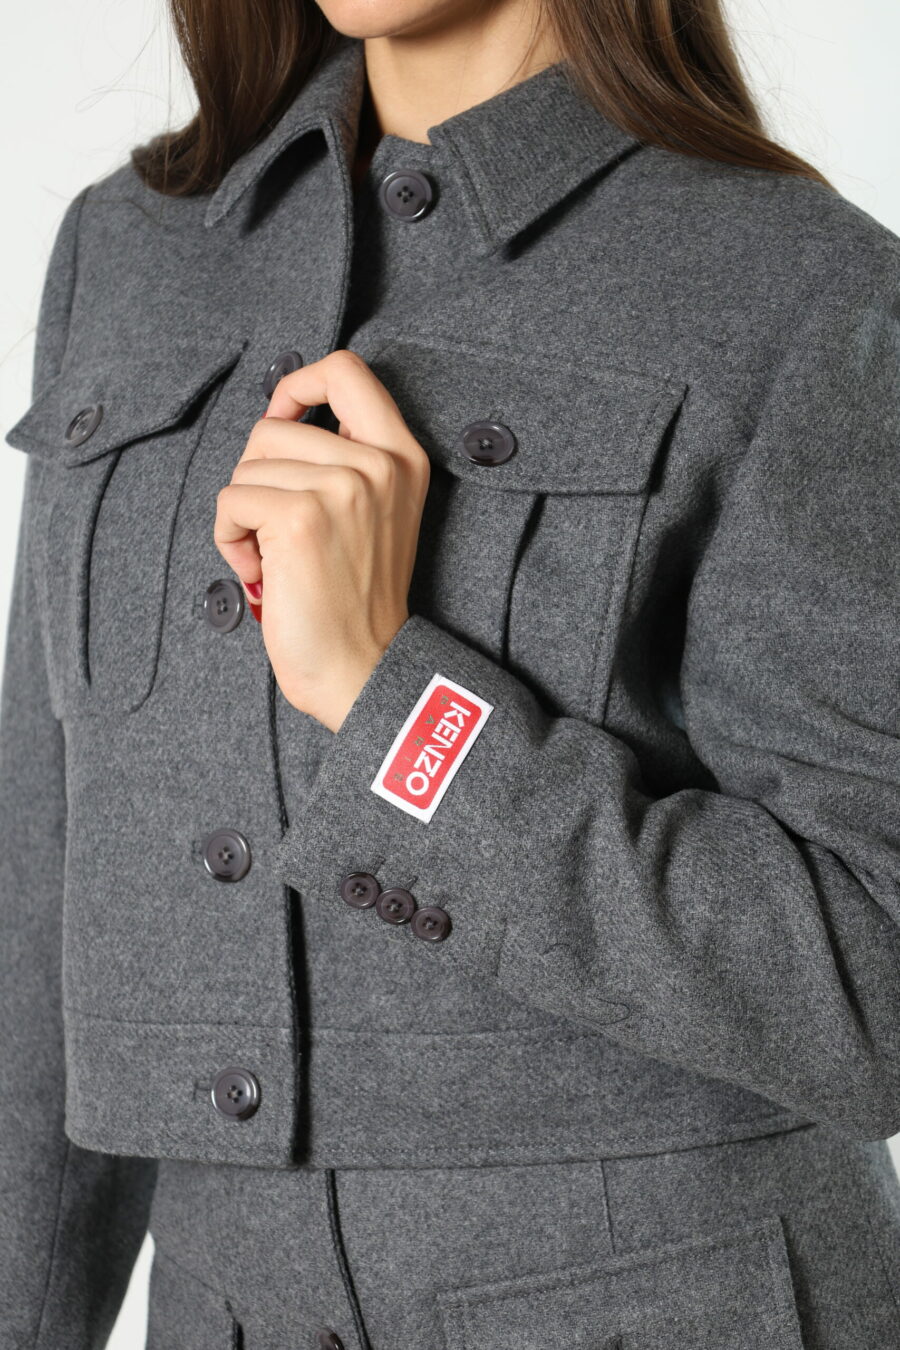 Grey jacket with mini-logo on sleeve - 8052865435499 409 1 scaled